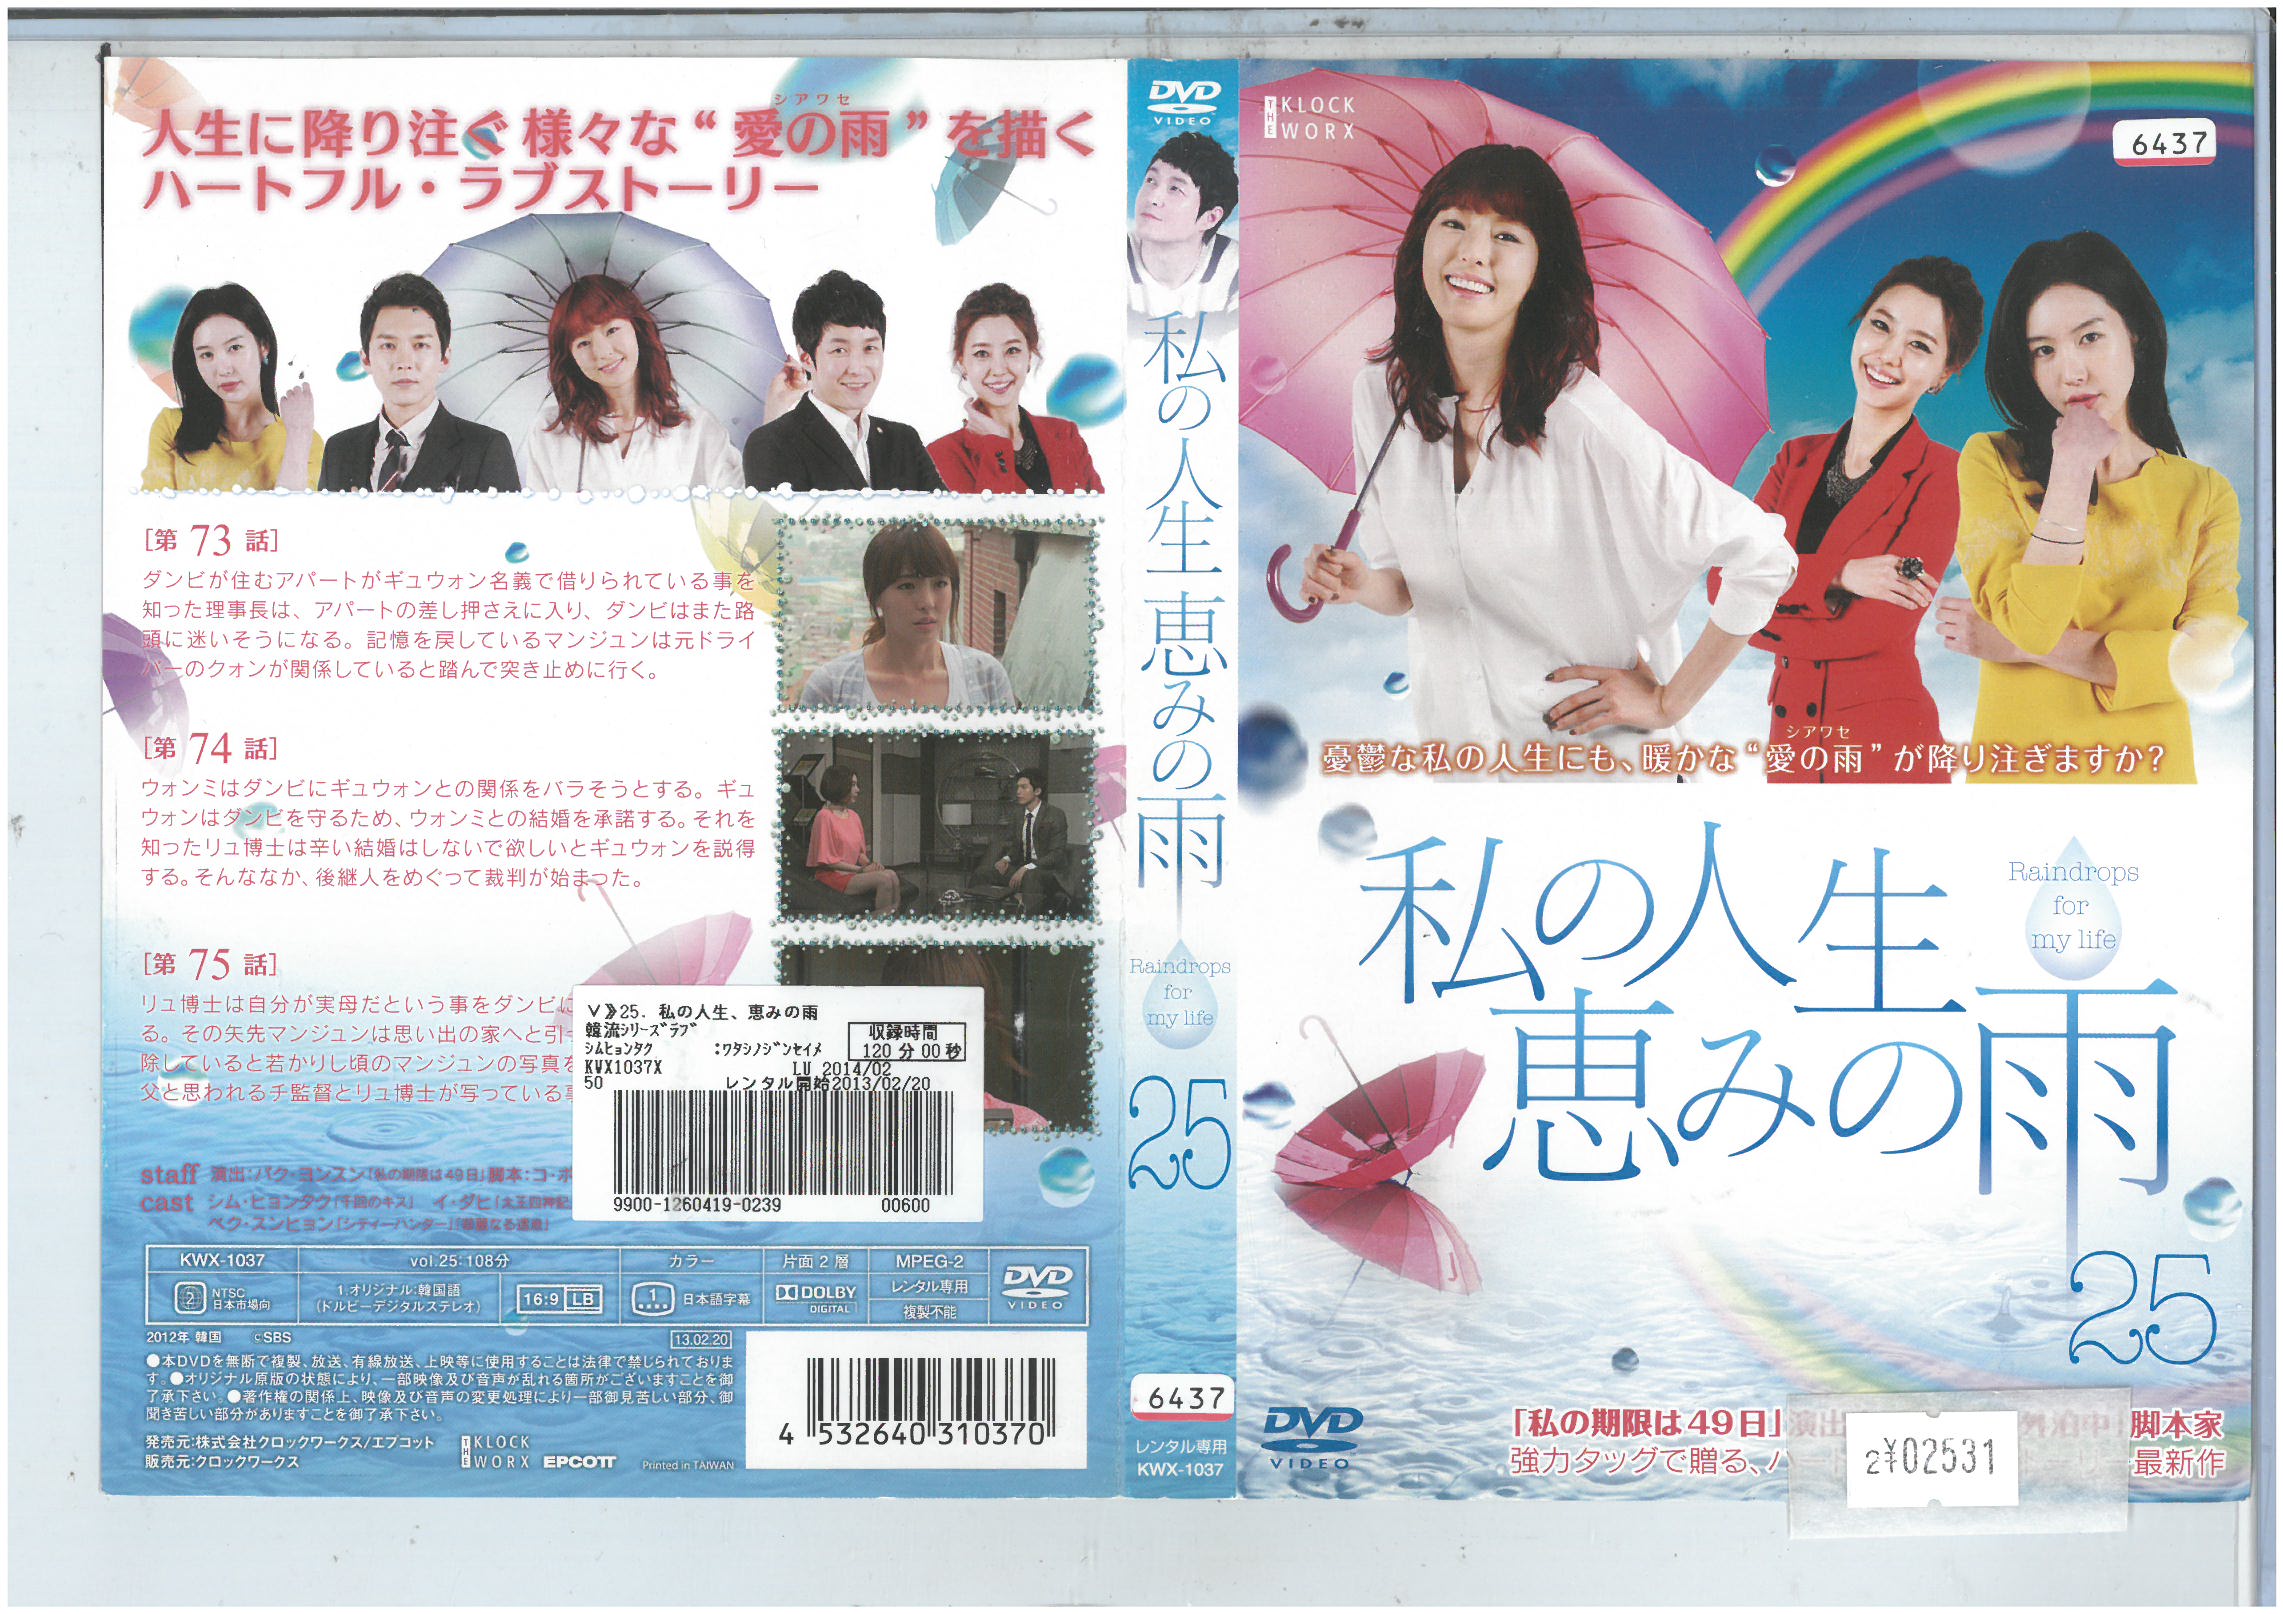 私の人生恵みの雨 vol.25 KWX1037【ケースなし】中古DVD_f